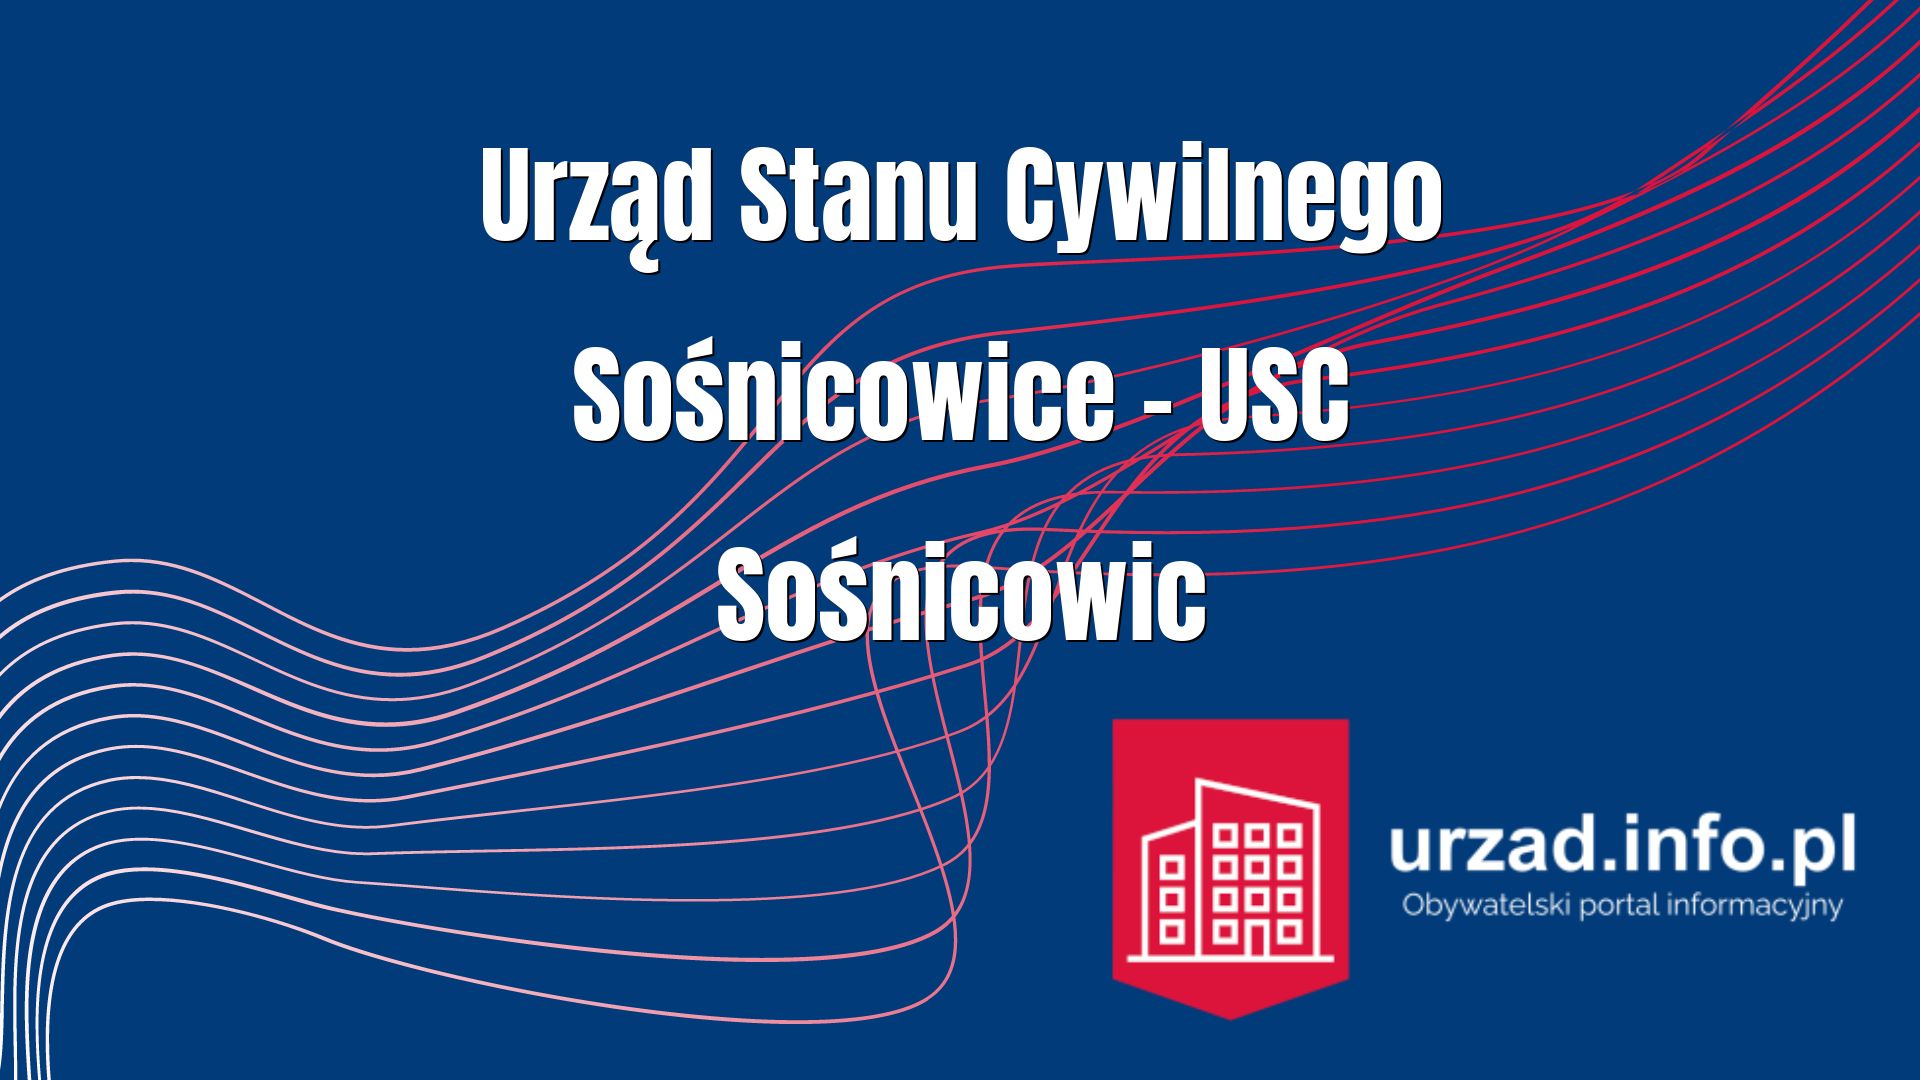 Urząd Stanu Cywilnego Sośnicowice – USC Sośnicowic